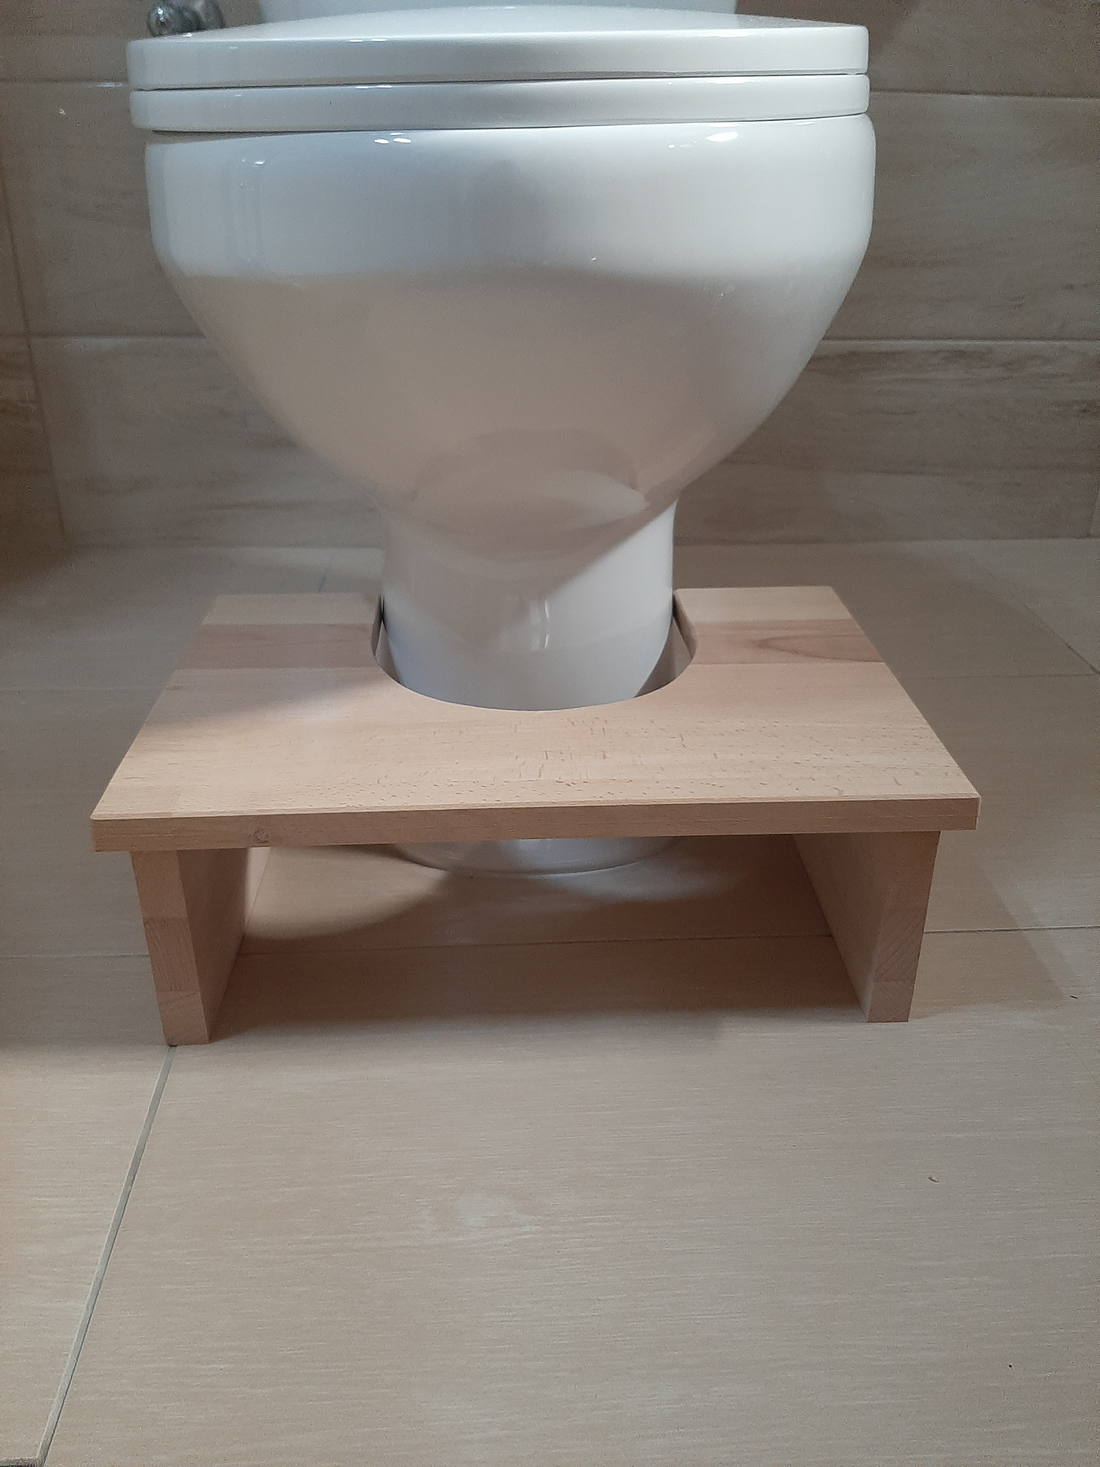 Toilet stool for kids